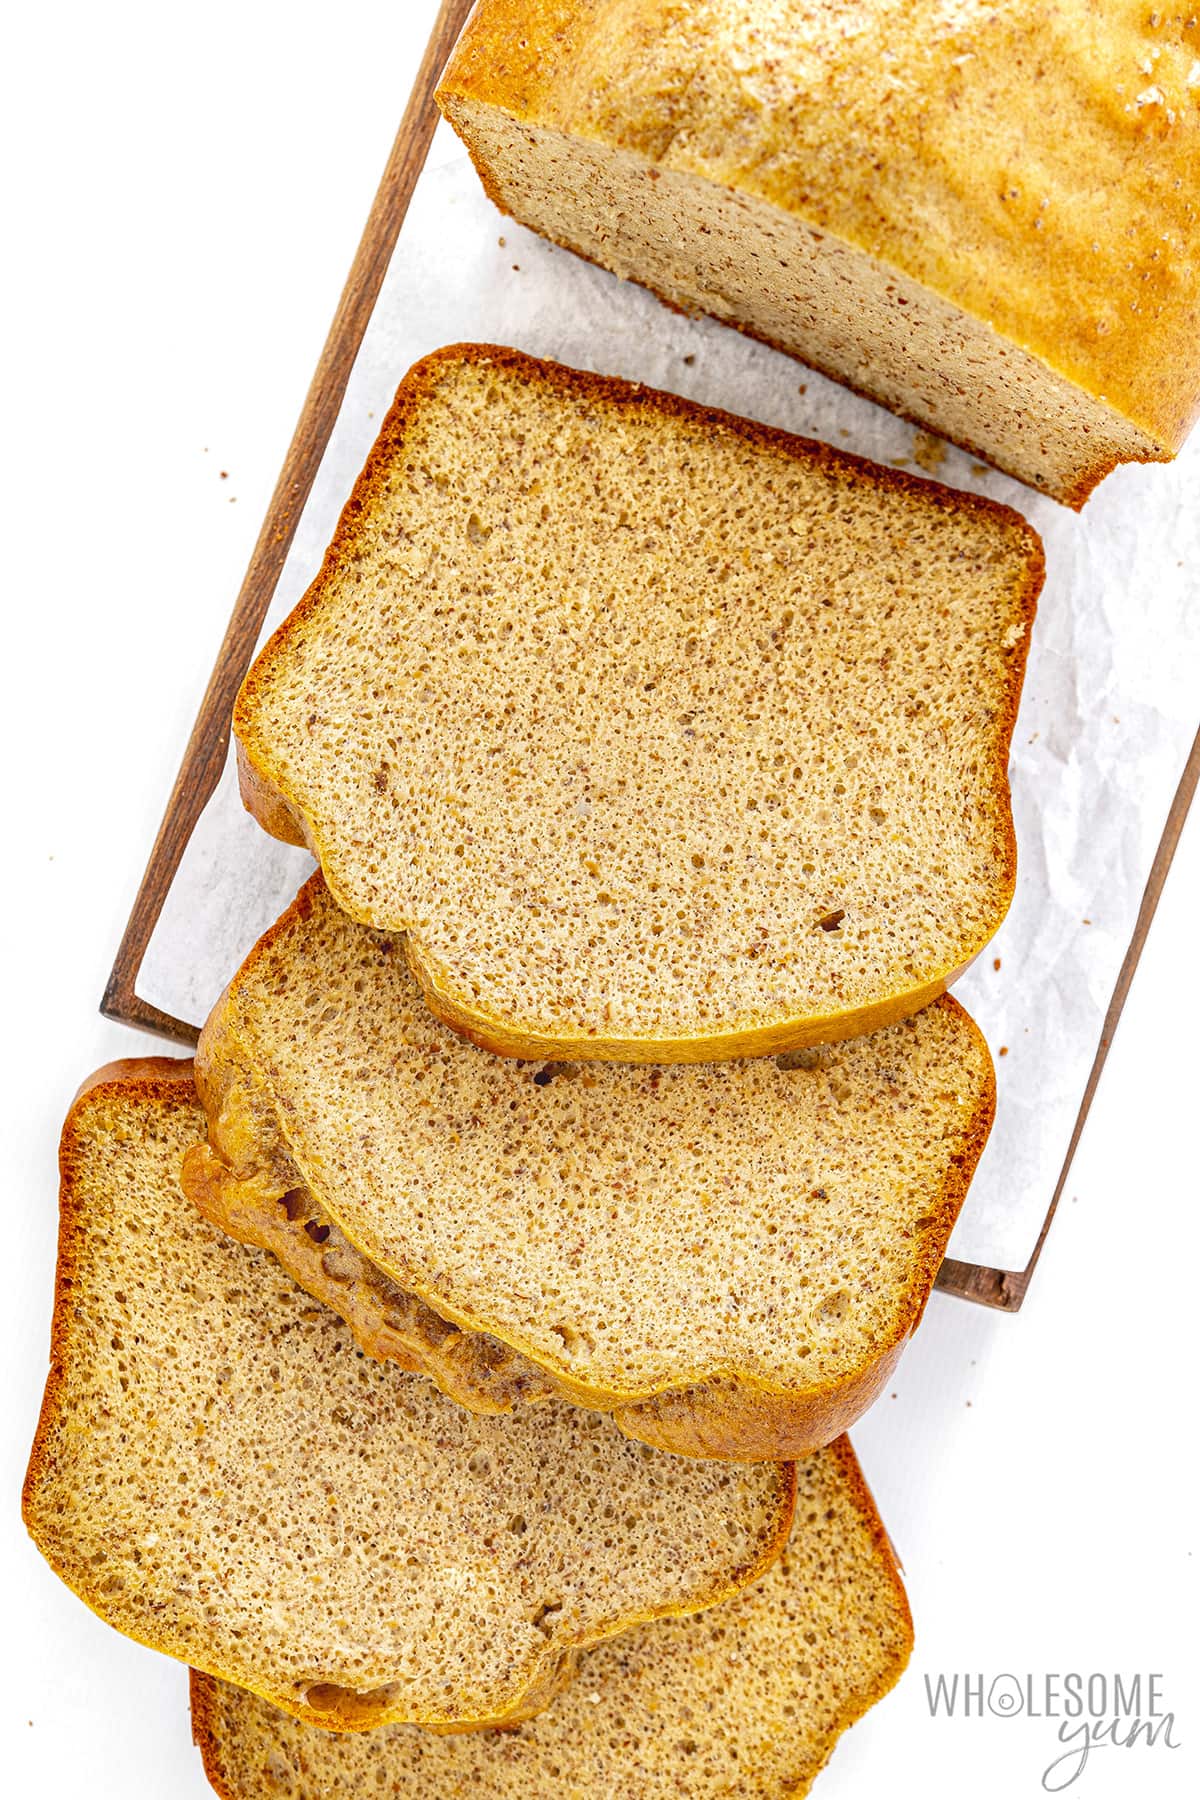 Flourless bread slices.